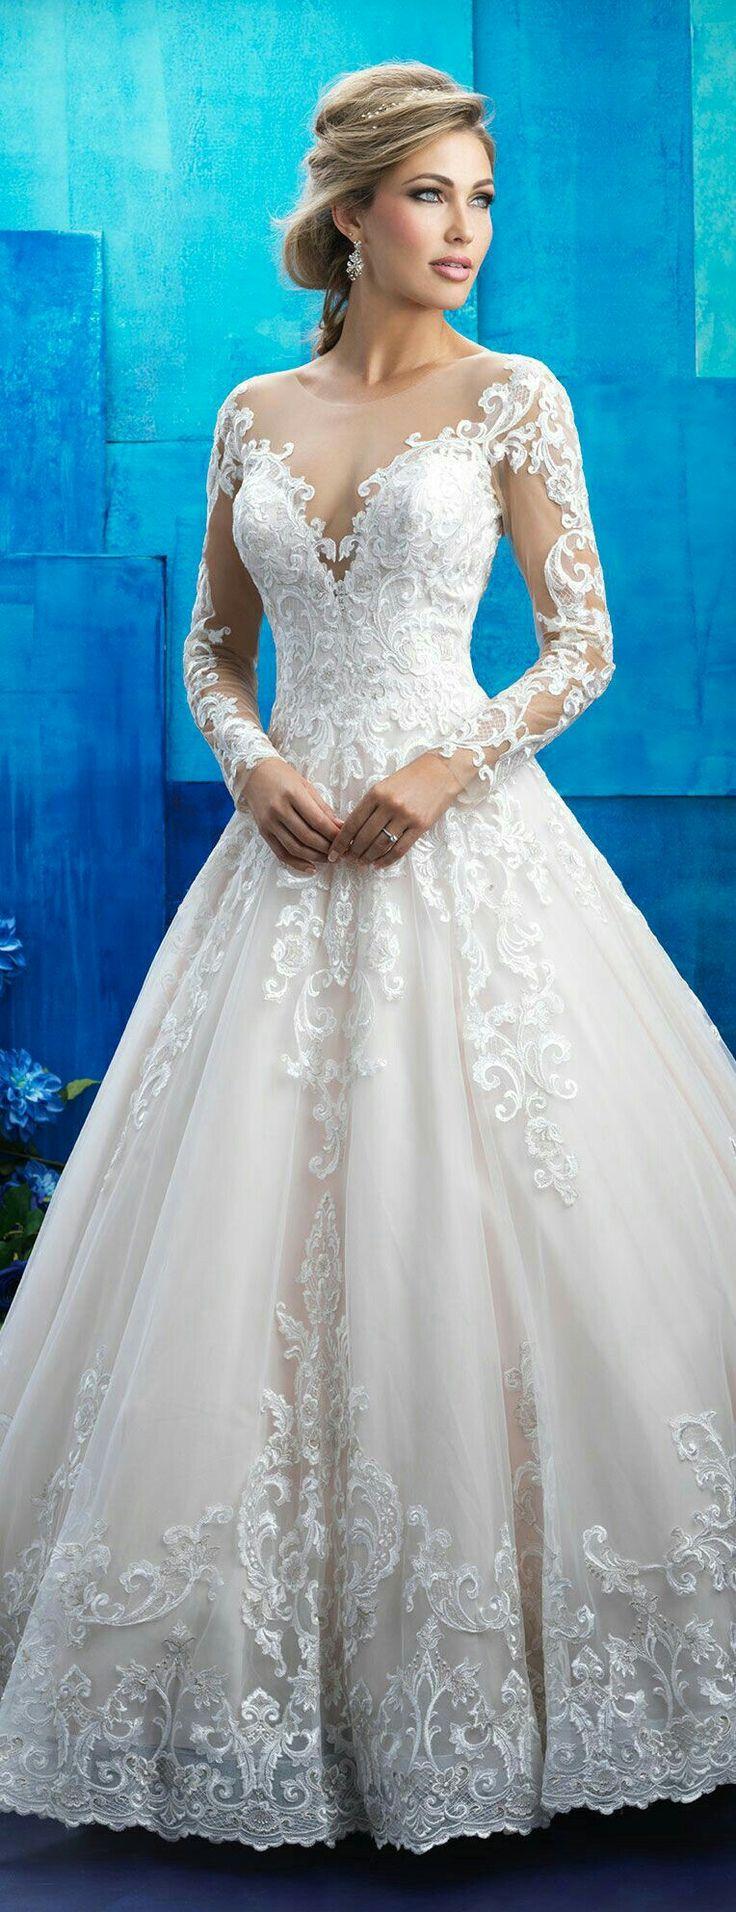 زفاف - Wedding Dress Shopping Tips